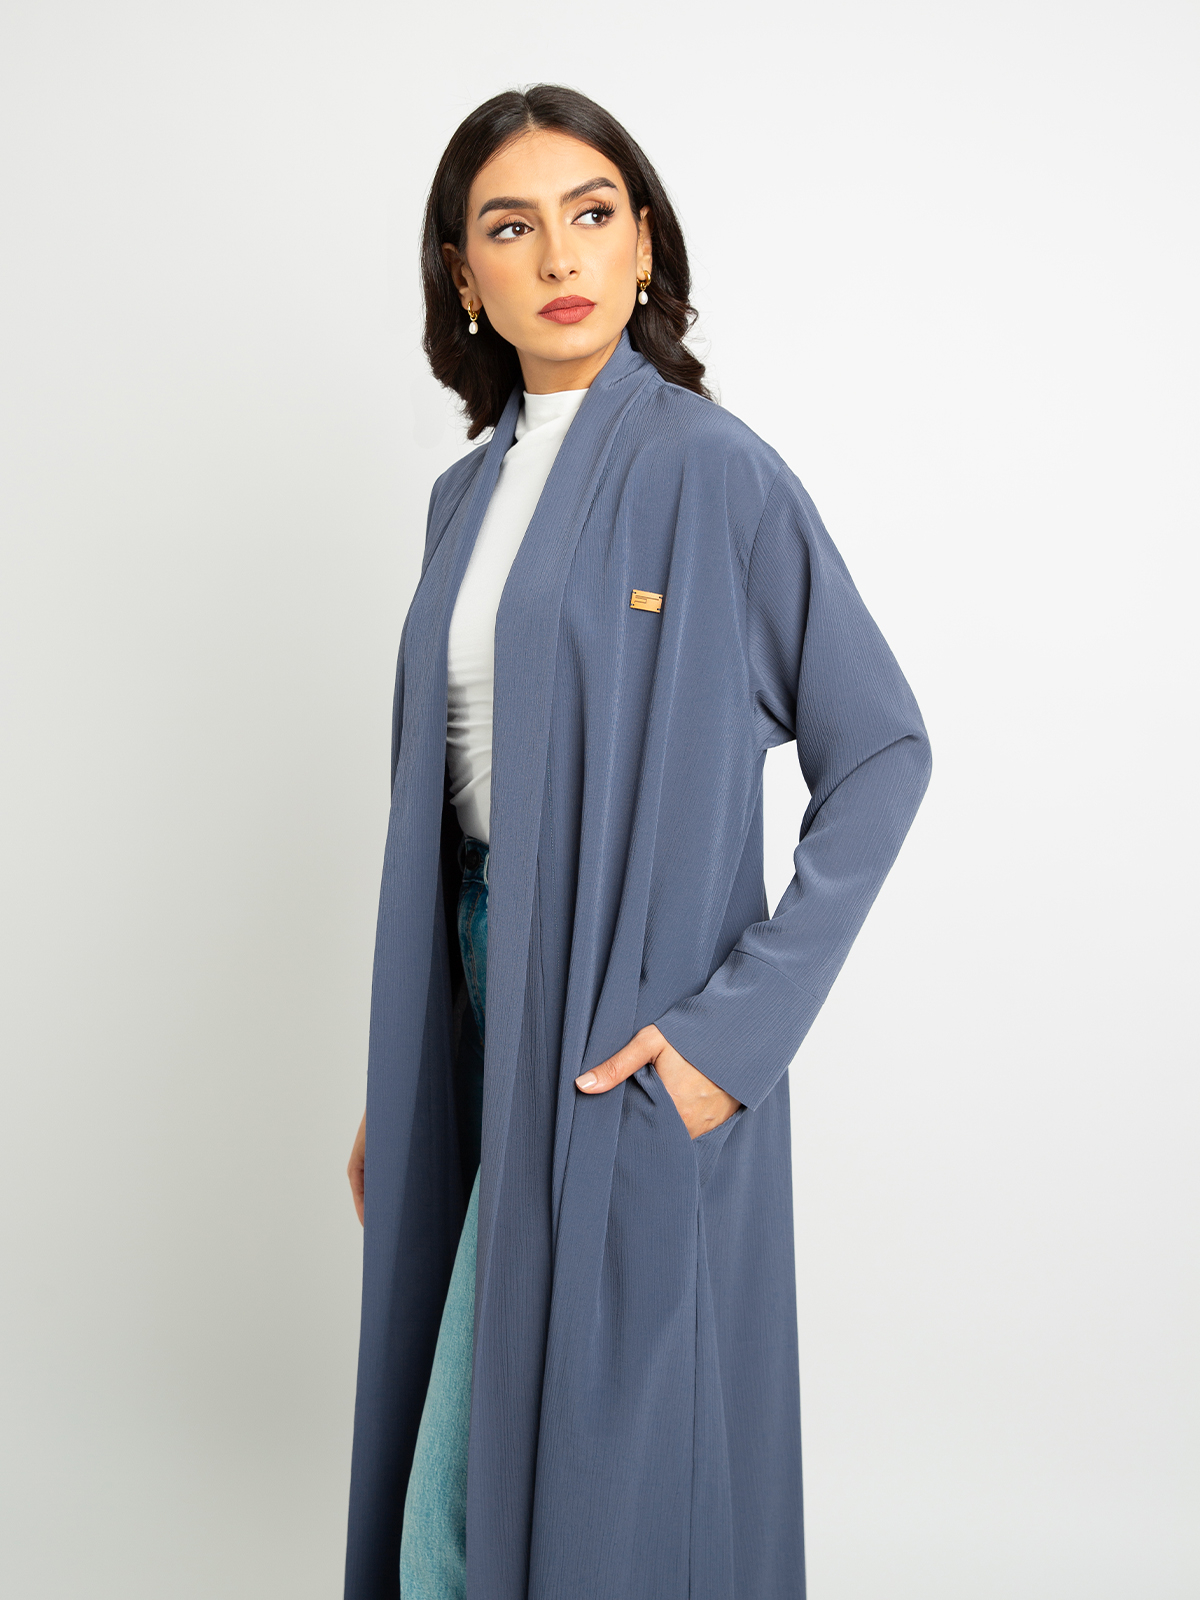 Grayish purple - Long Open Practical Abaya in Fancy Yoryu Fabric